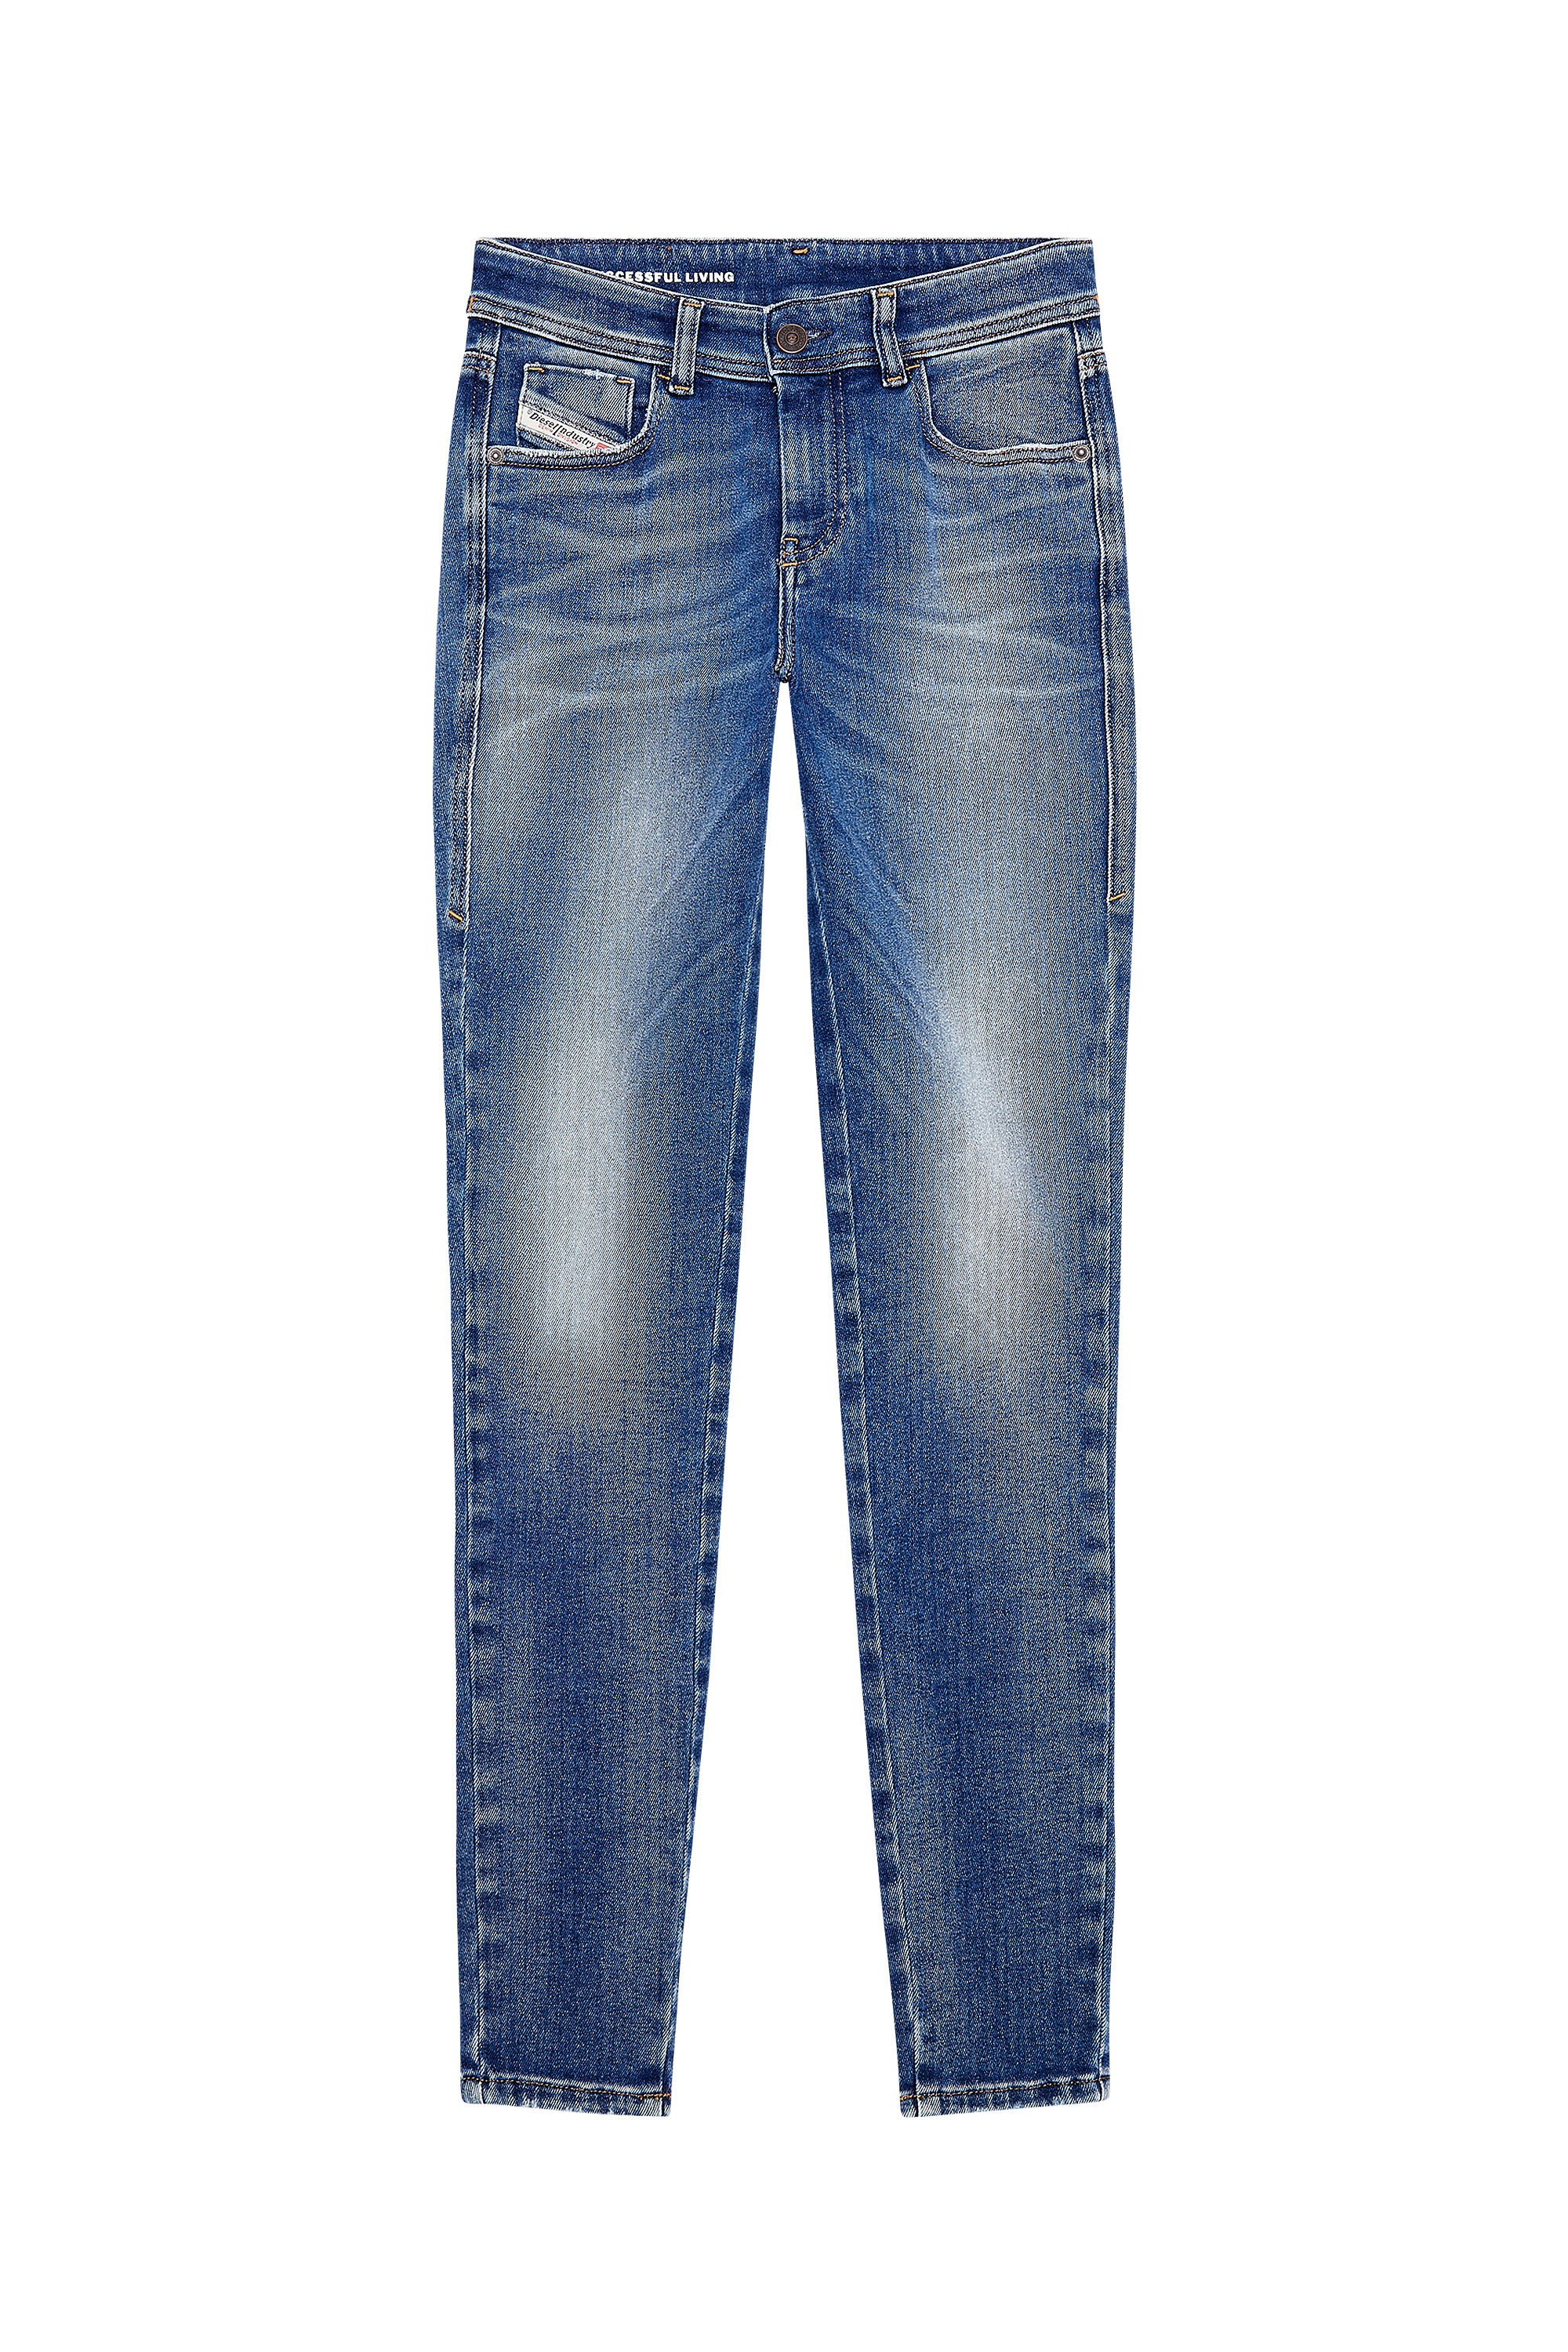 Diesel - Woman Super skinny Jeans 2017 Slandy 09H90, Medium blue - Image 6